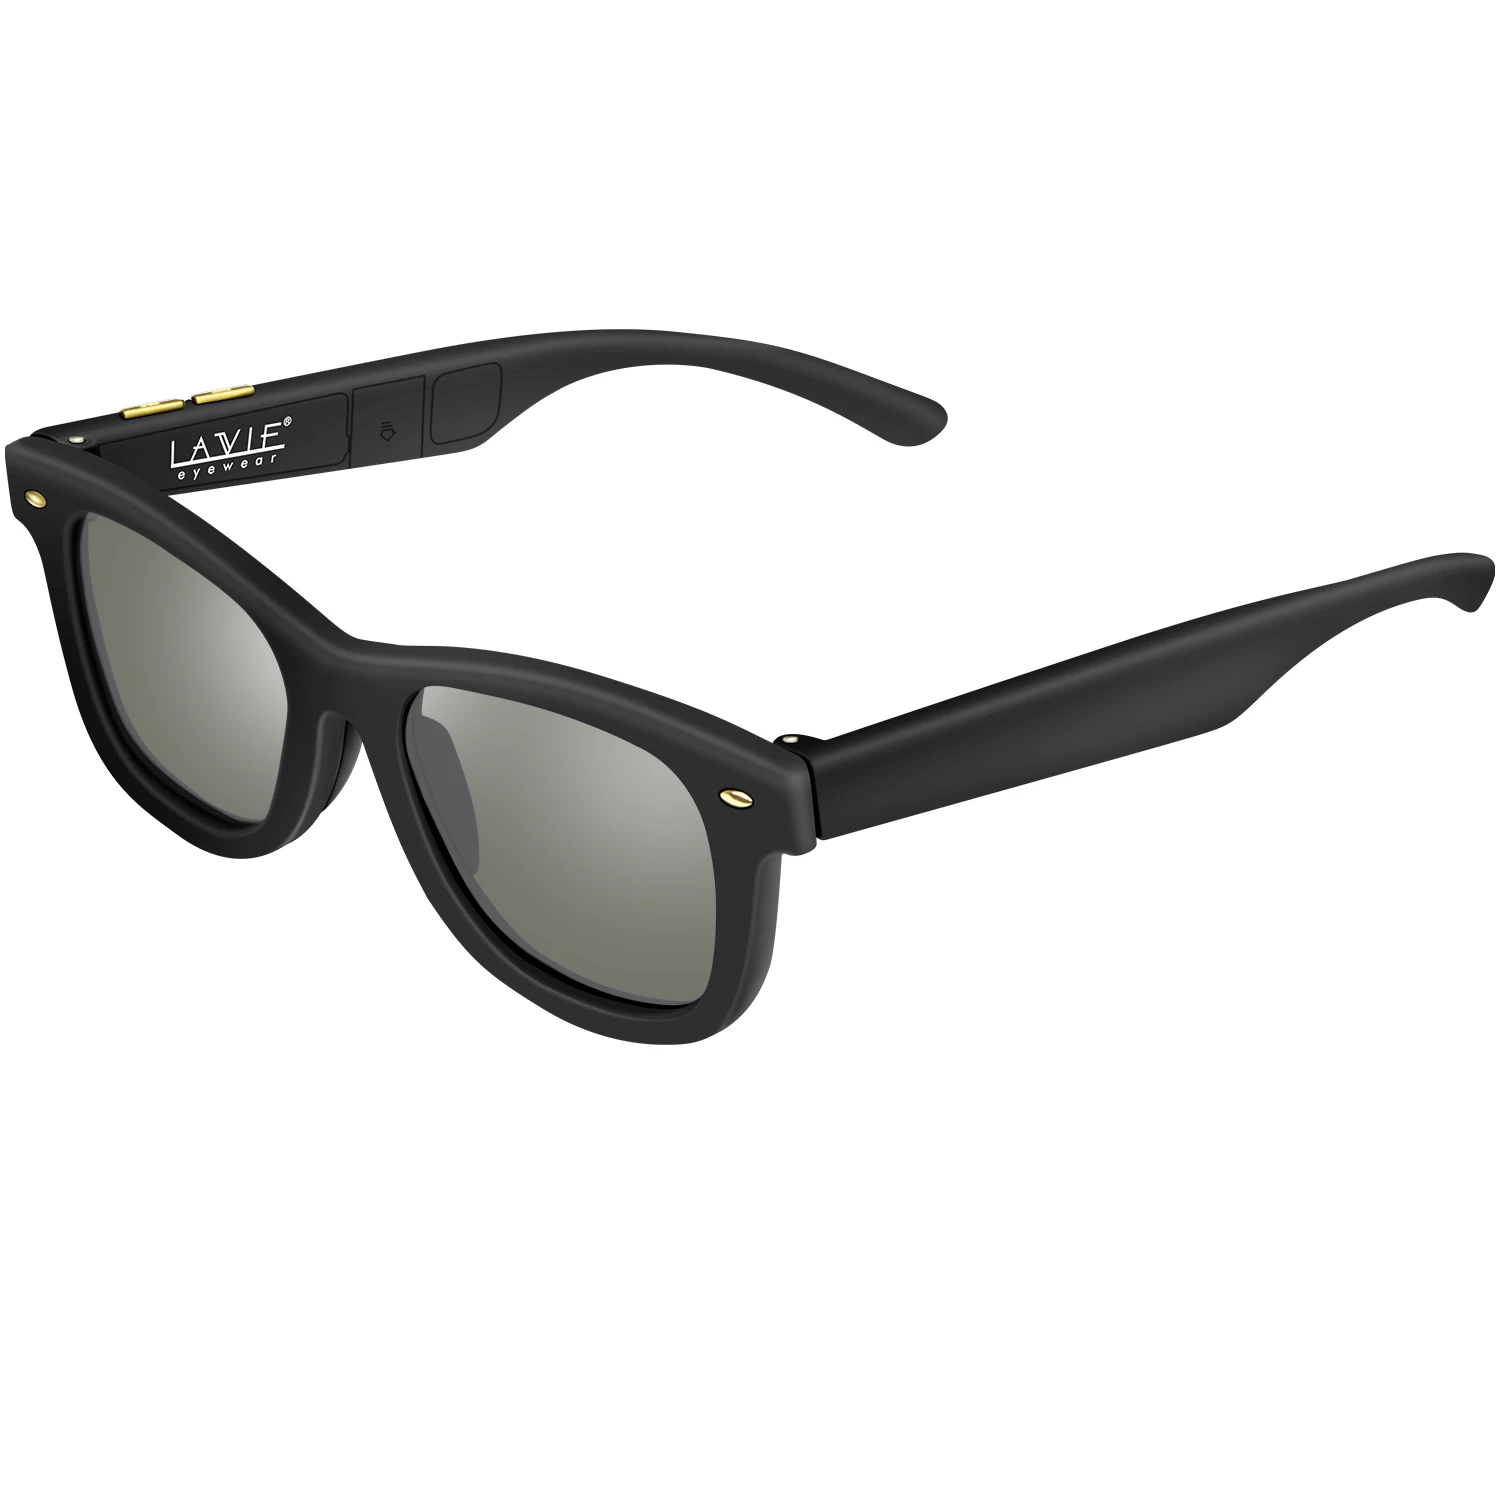 Солнцезащитные очки с переменным электронным управлением оттенком позволяют вашим солнцезащитным очкам адаптироваться под светильник окружения солнцезащитные очки мужские поляризованные - Цвет линз: GRAY